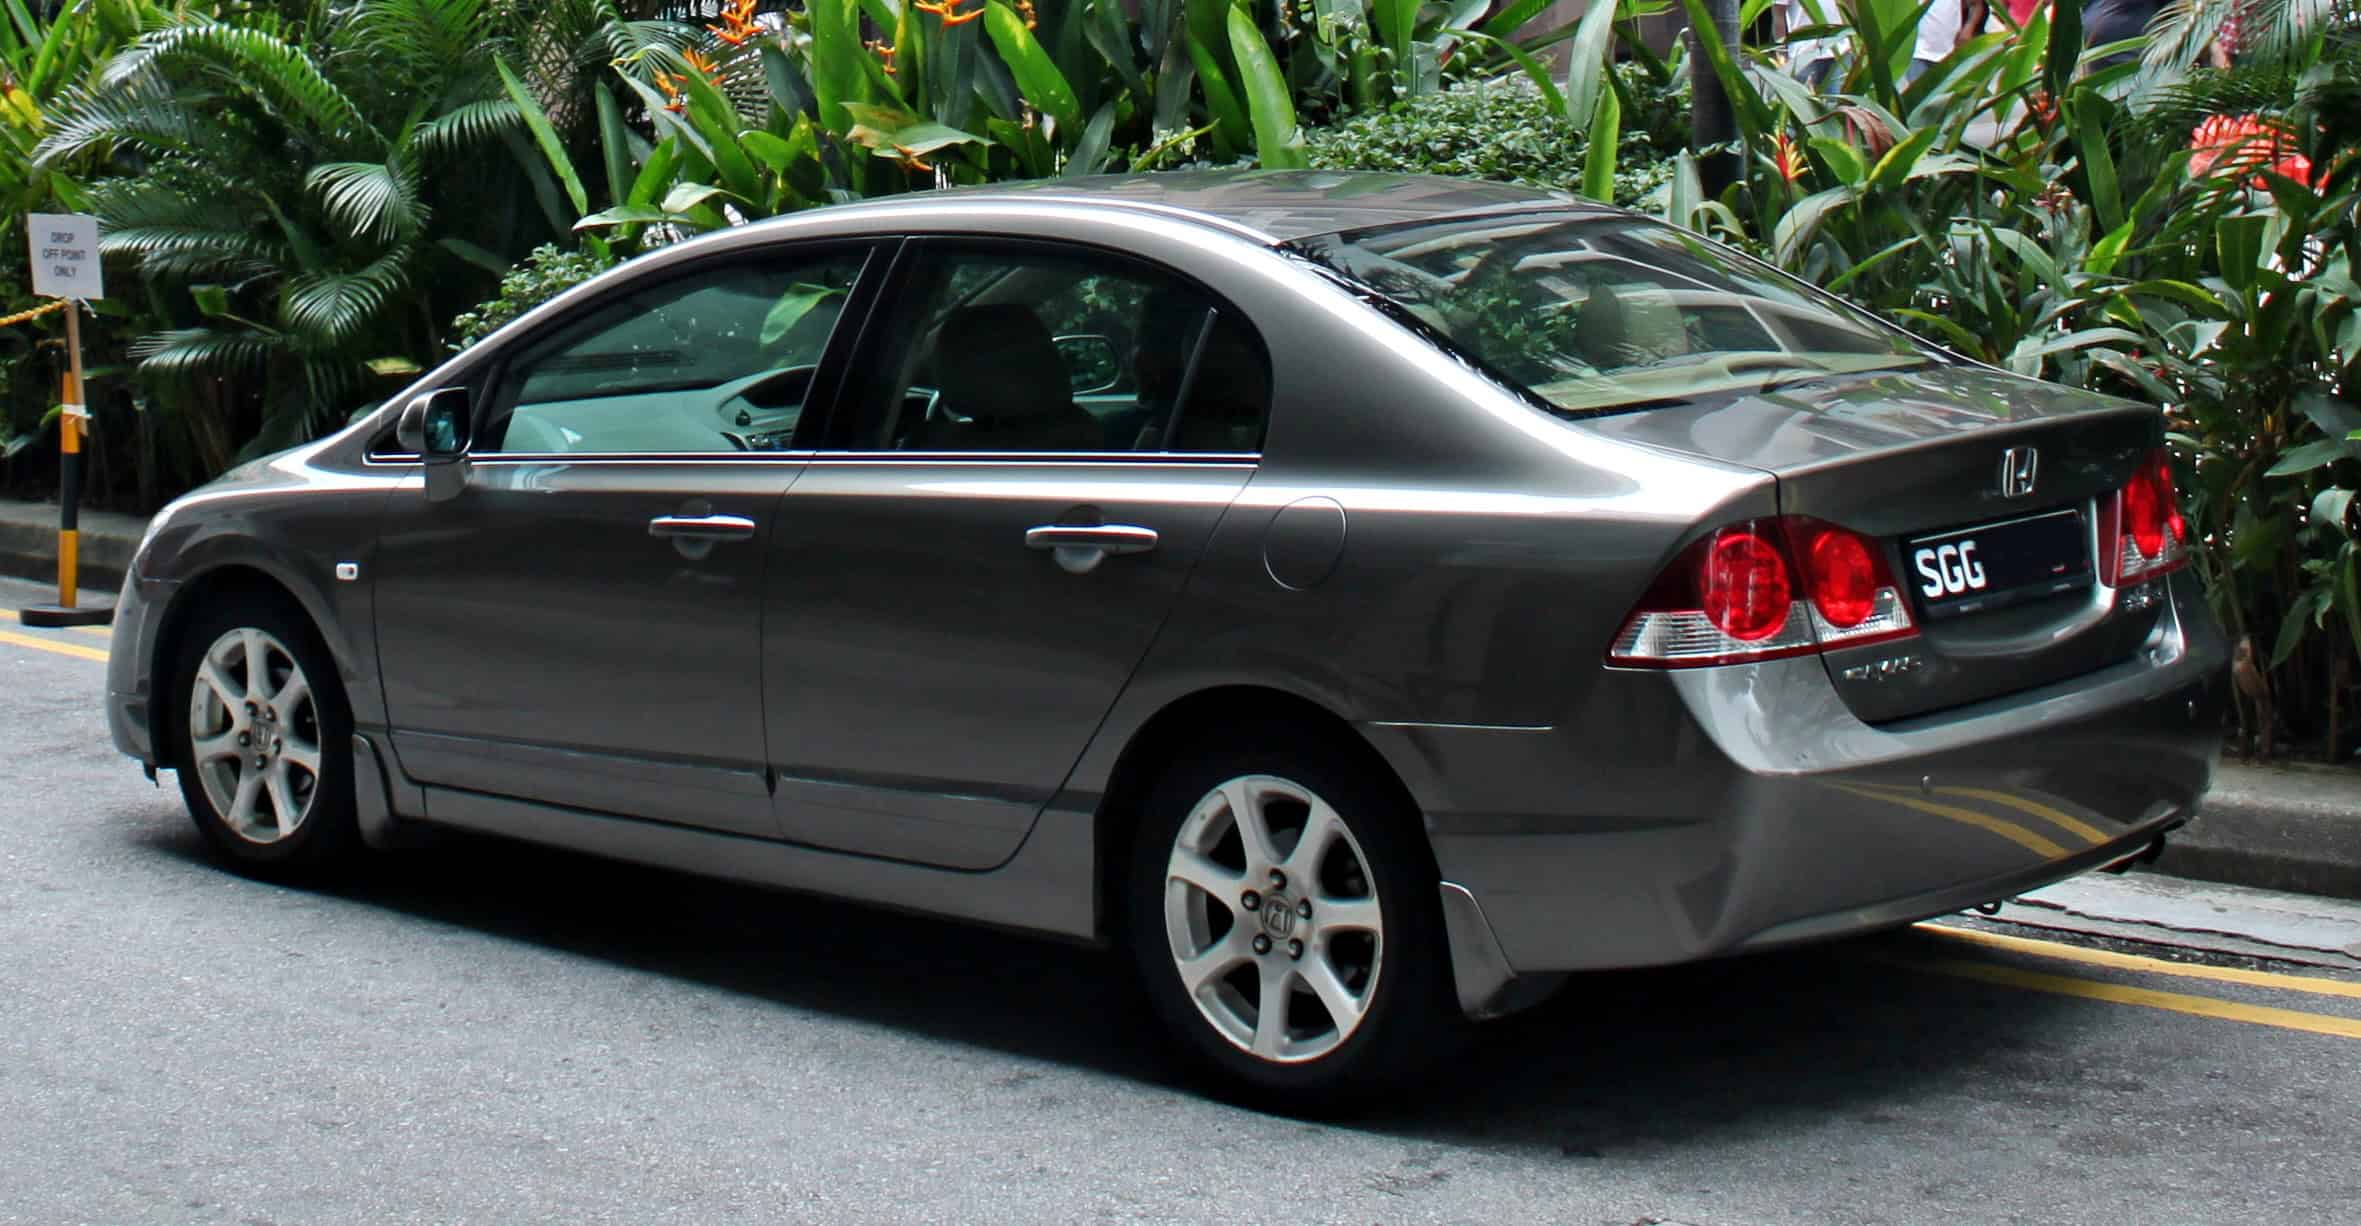 2007 Honda Civic